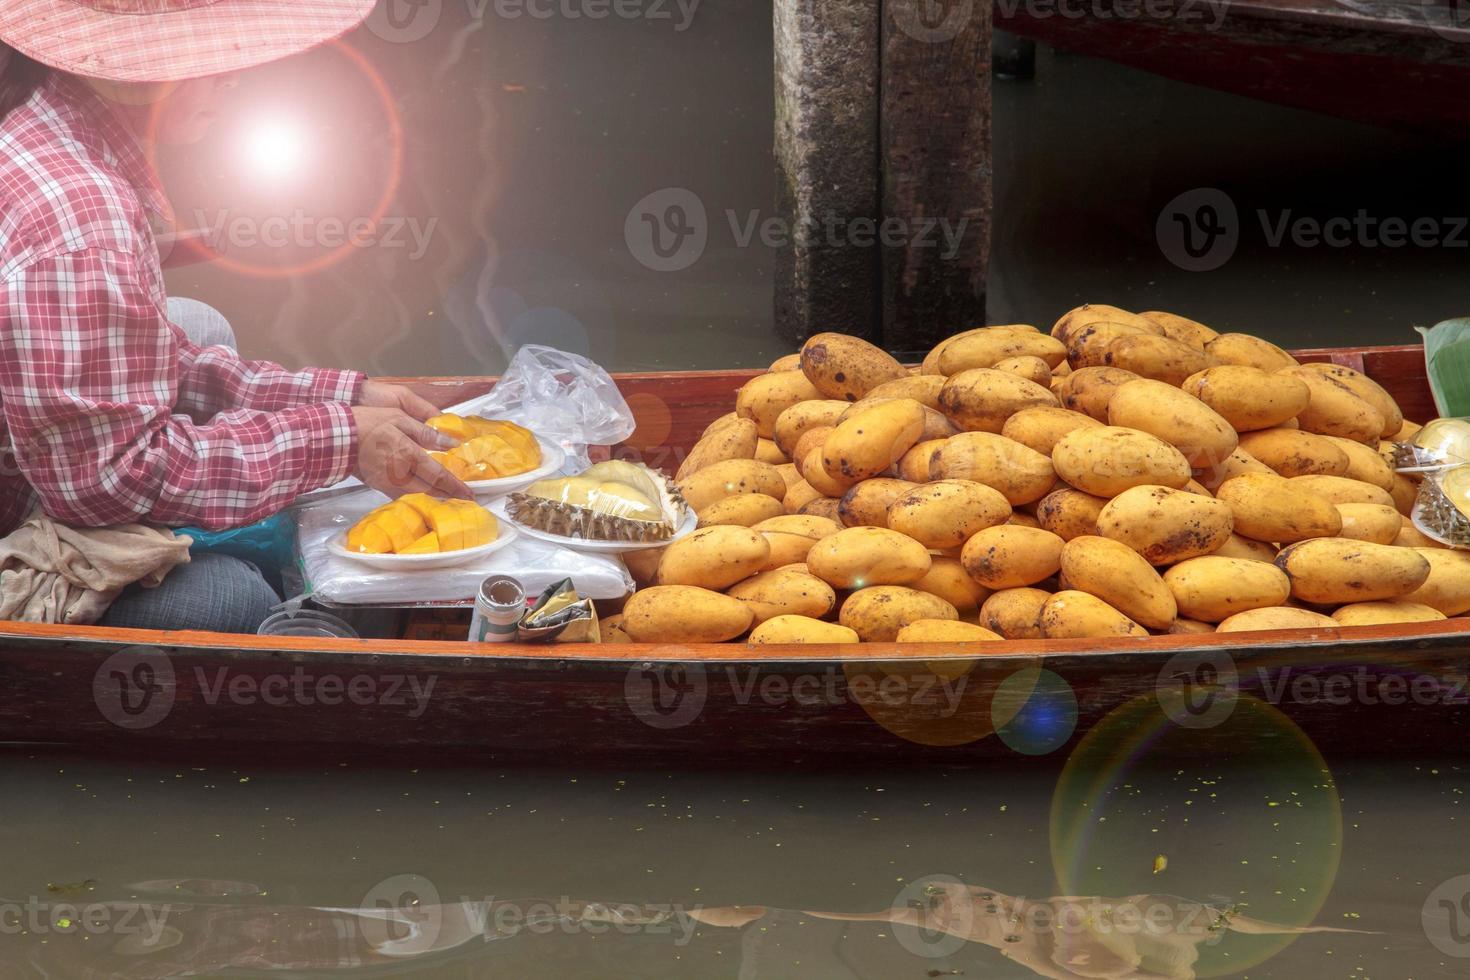 boten verkoop fruit - rijp mango - in damnoen saduak drijvend markt is een populair toerist bestemming dat Europeanen en Chinese Leuk vinden naar reizen met de traditioneel manier van leven van de dorpelingen. foto